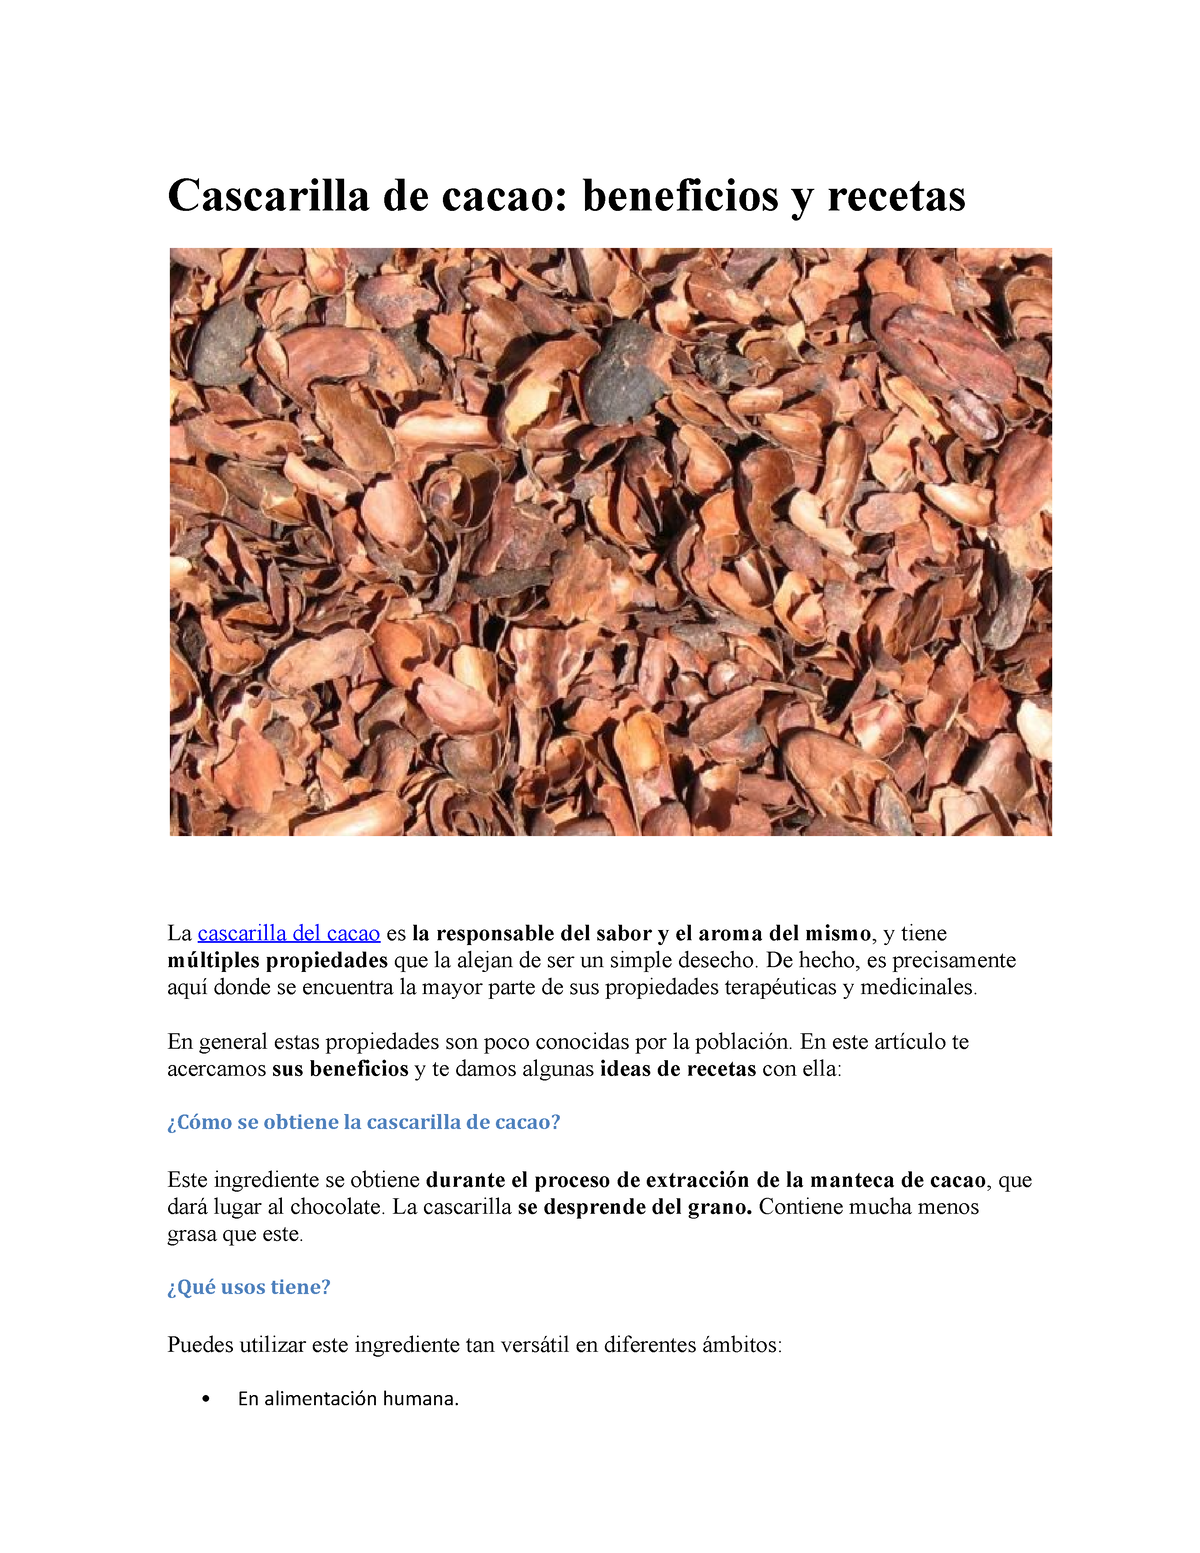 Cascarilla de cacao - Para consultar y conocer sus beneficios - Cascarilla  de cacao: beneficios y - Studocu